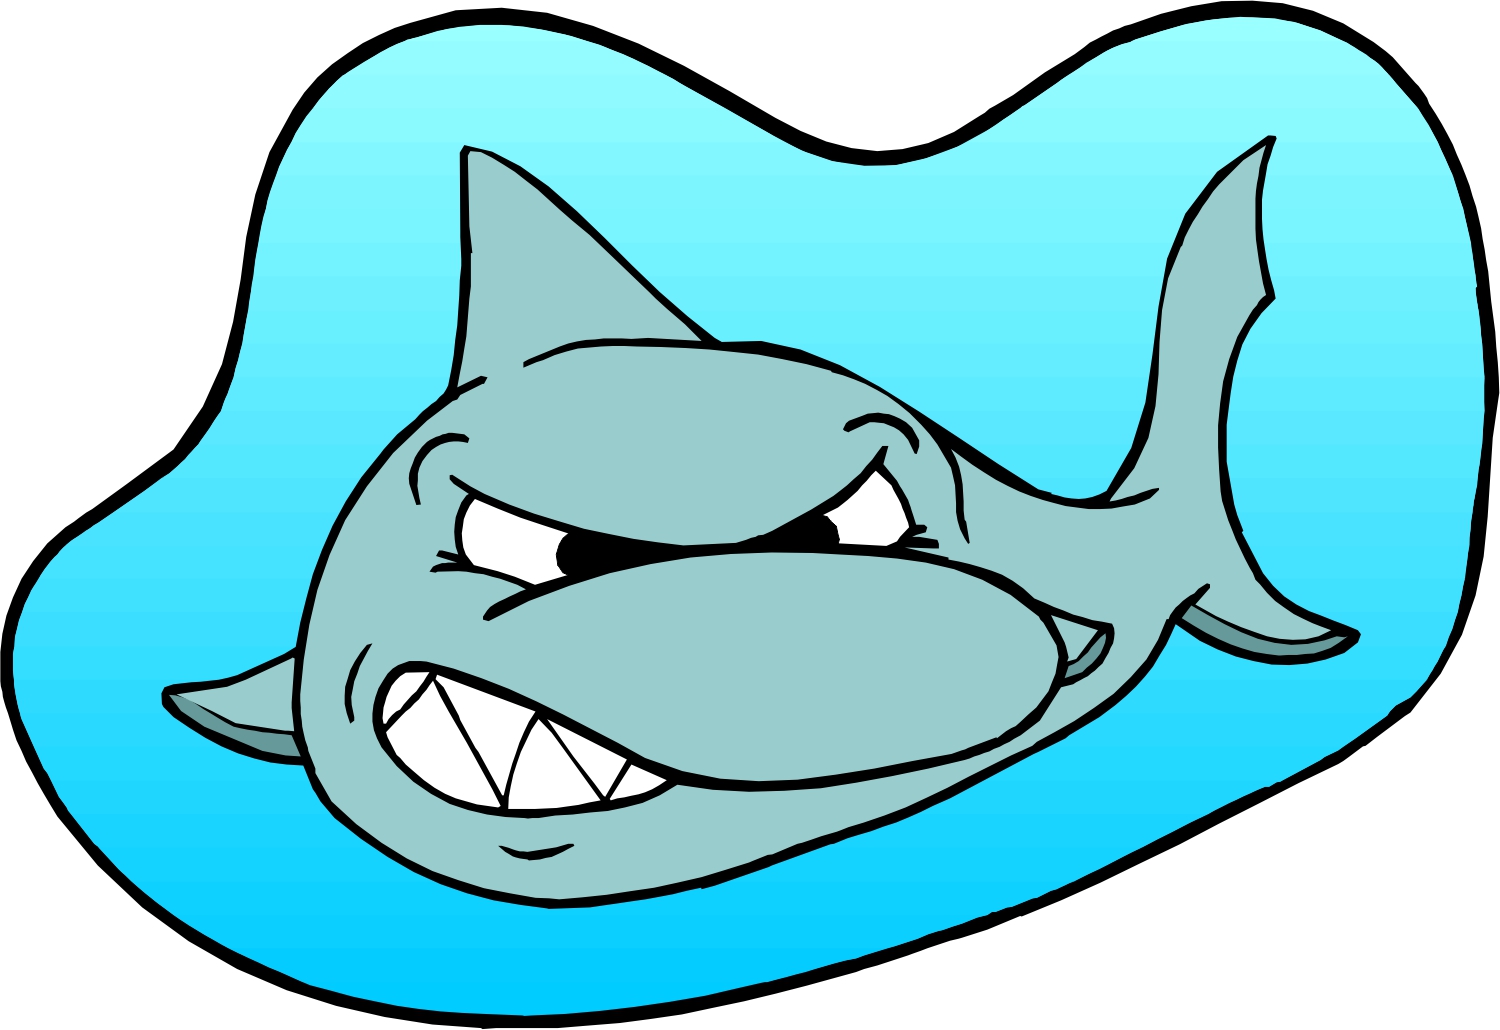 Cartoon Great White Shark   Clipart Best